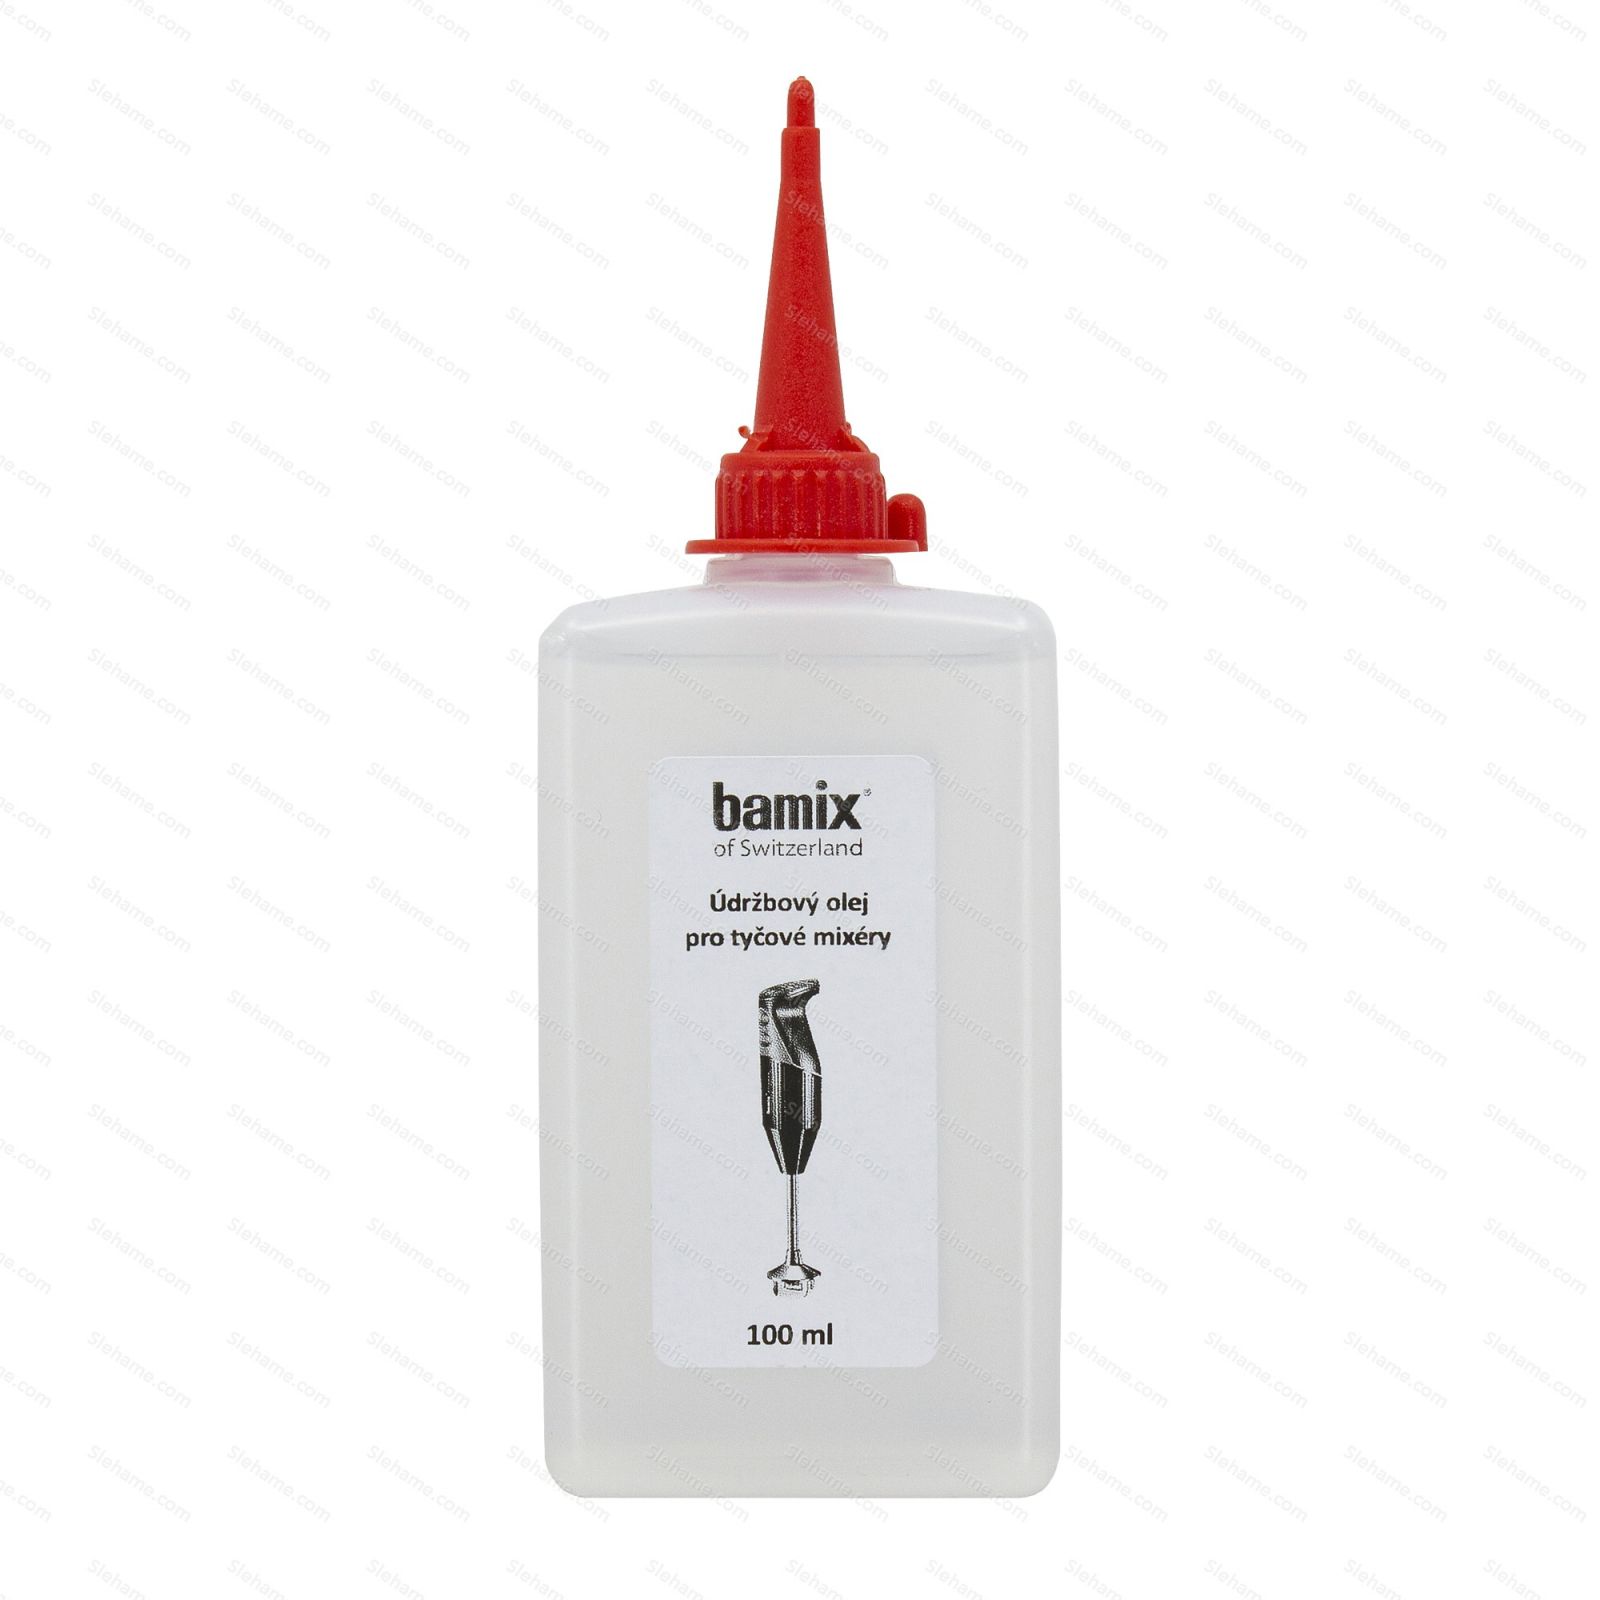 Údržbový olej pro tyčové mixéry Bamix 100 ml - hlavní pohled